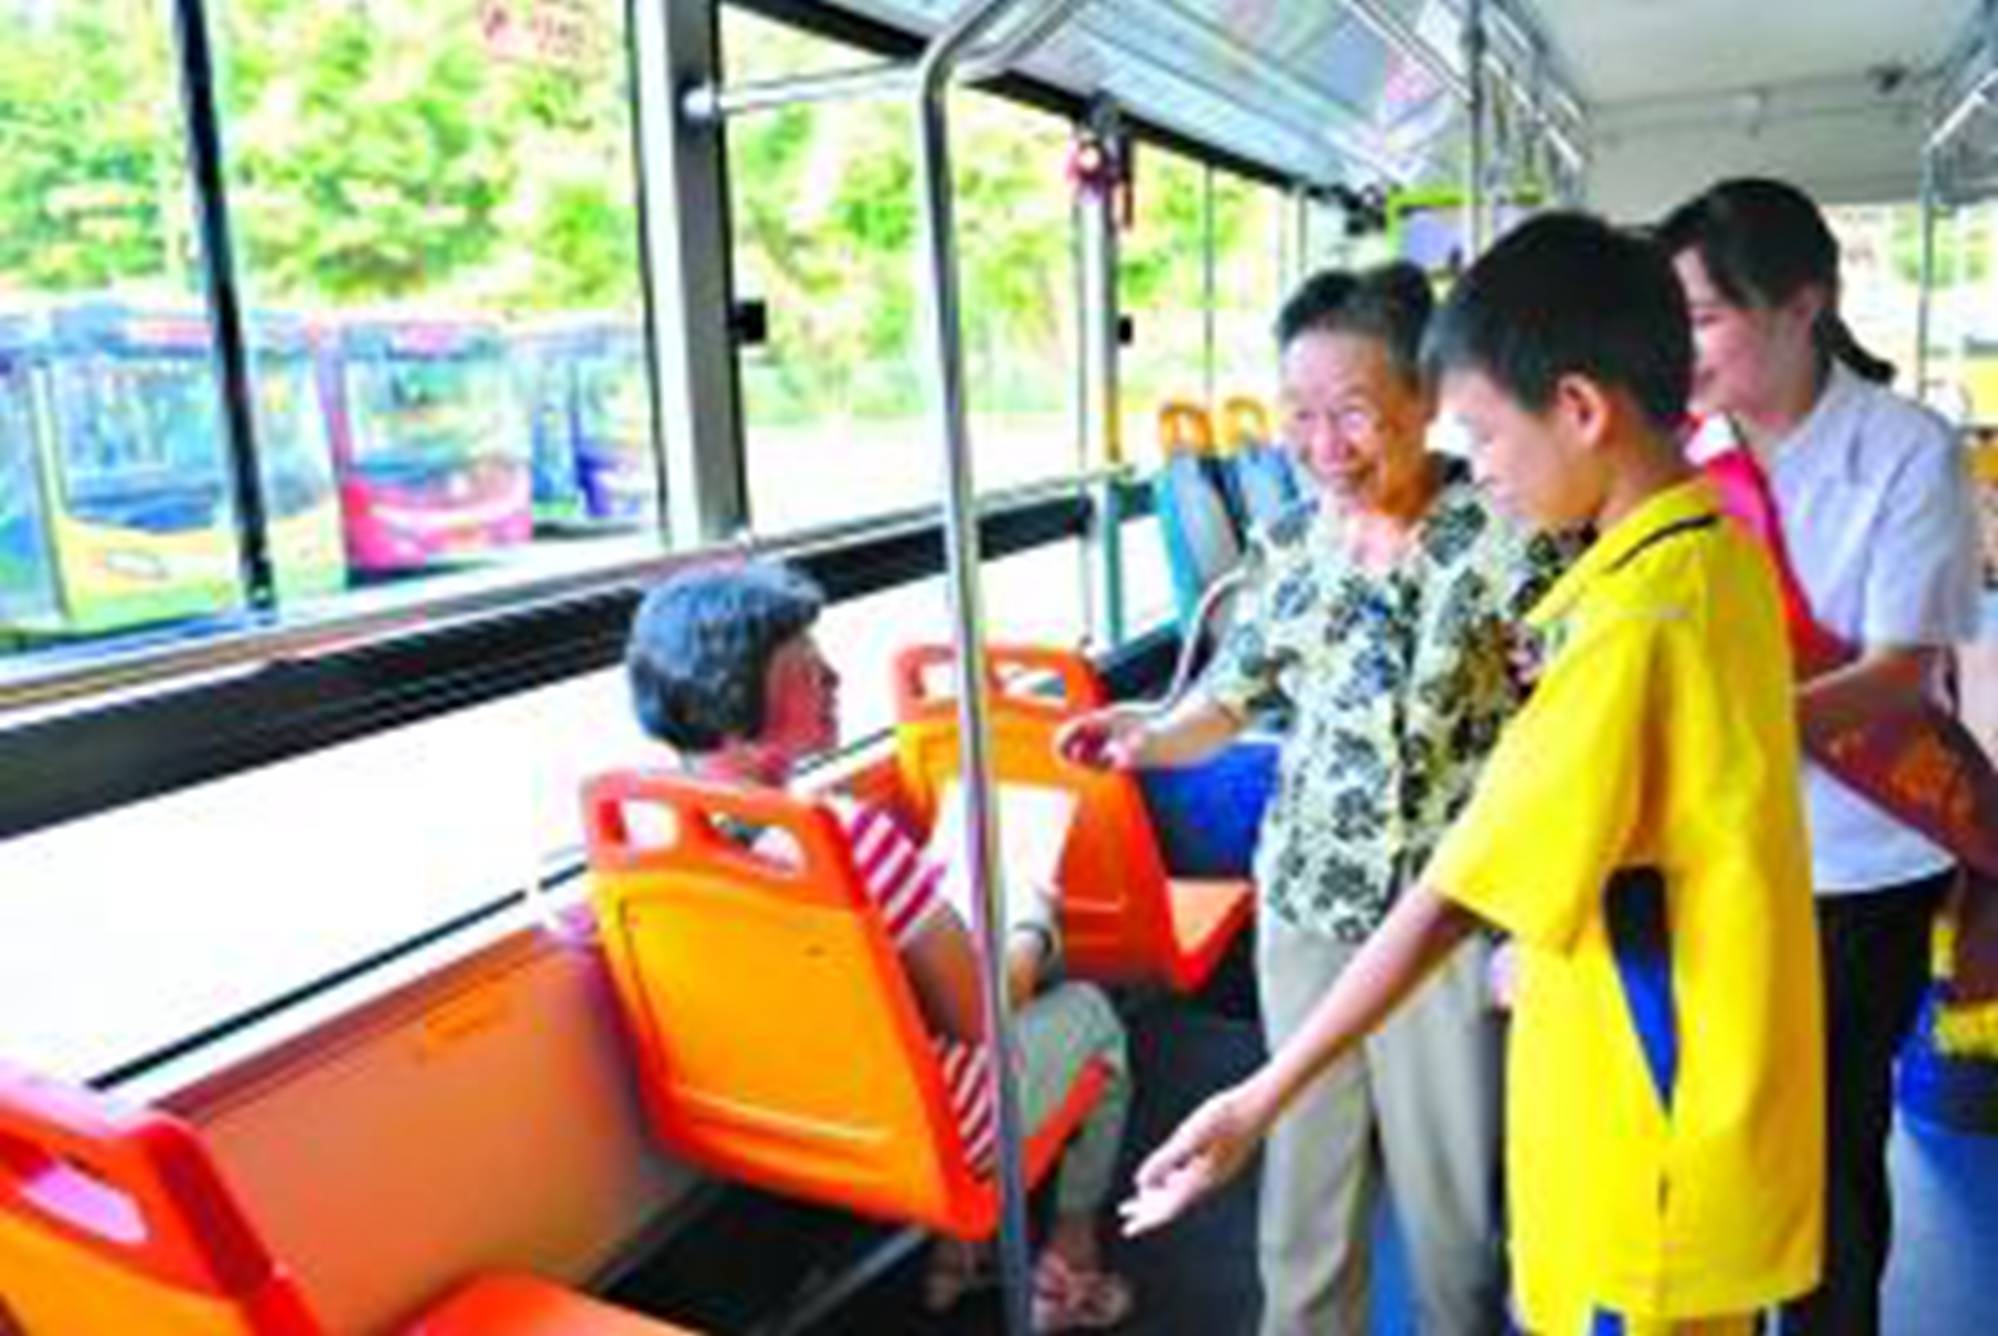 原创公交车上8岁孩子被迫让座忘拿书包老人一个举动引起众怒